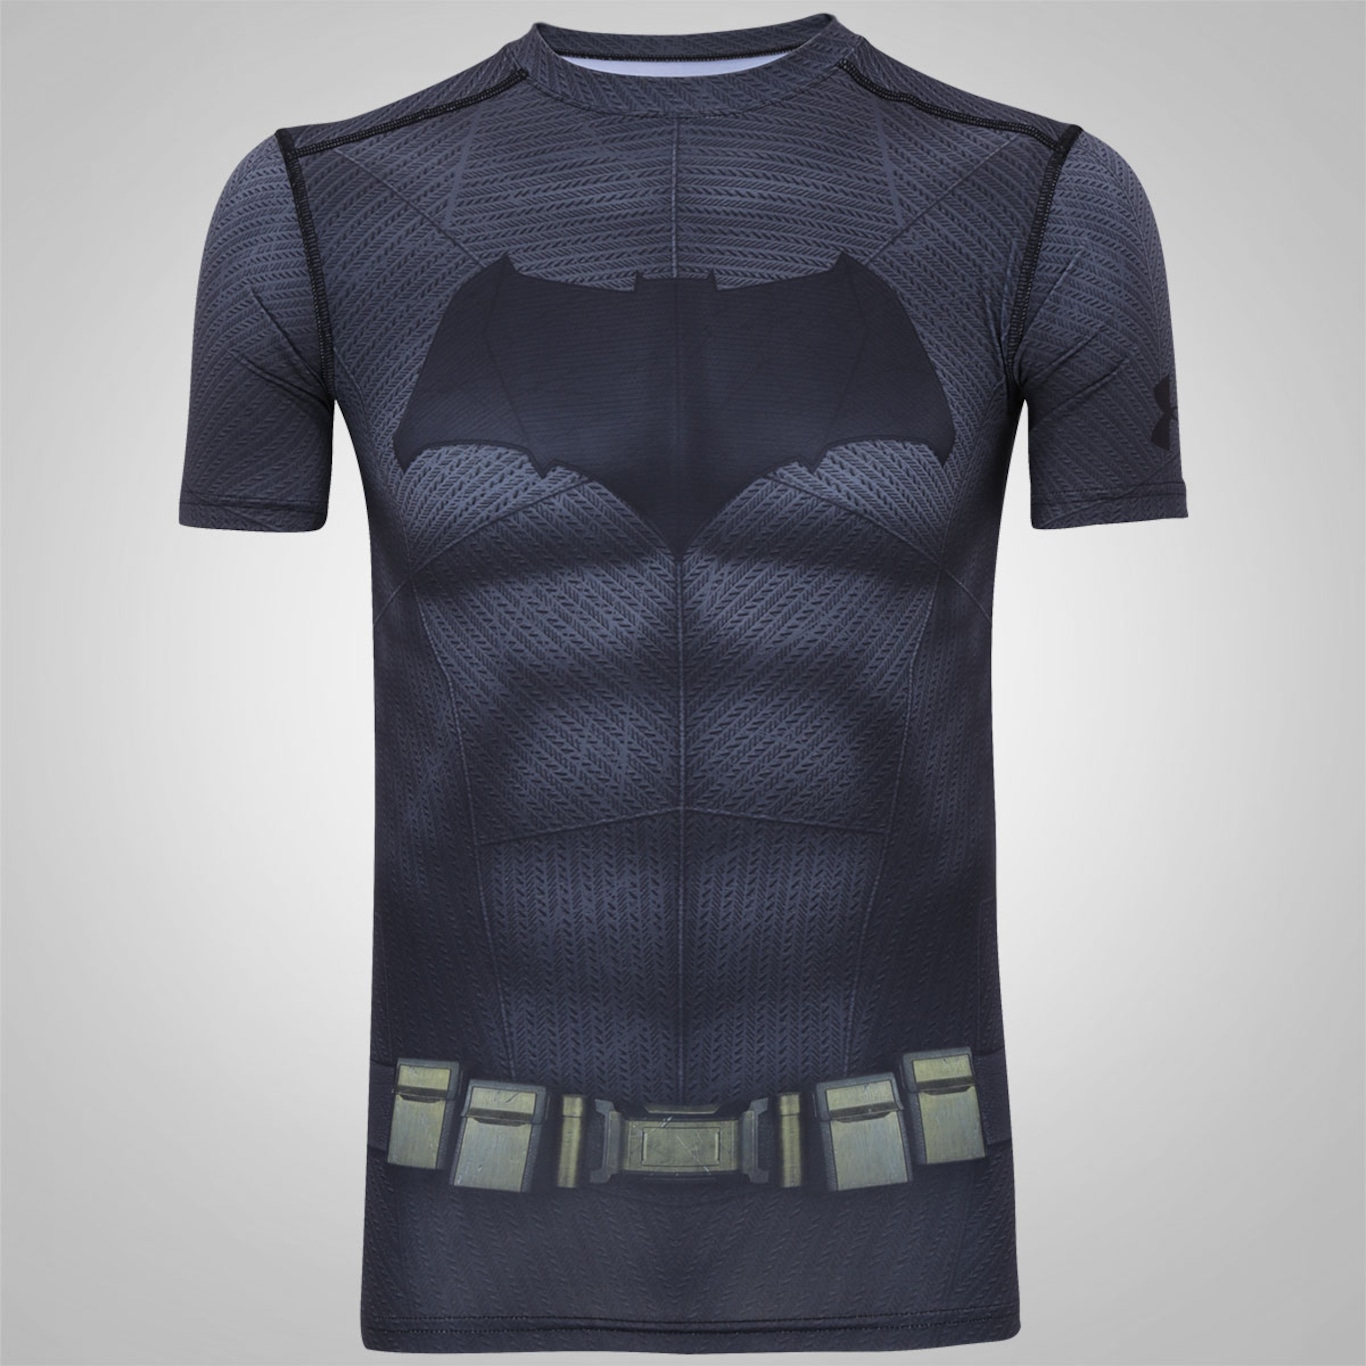 Camiseta de Compressão Under Armour Super Homem - Masculina